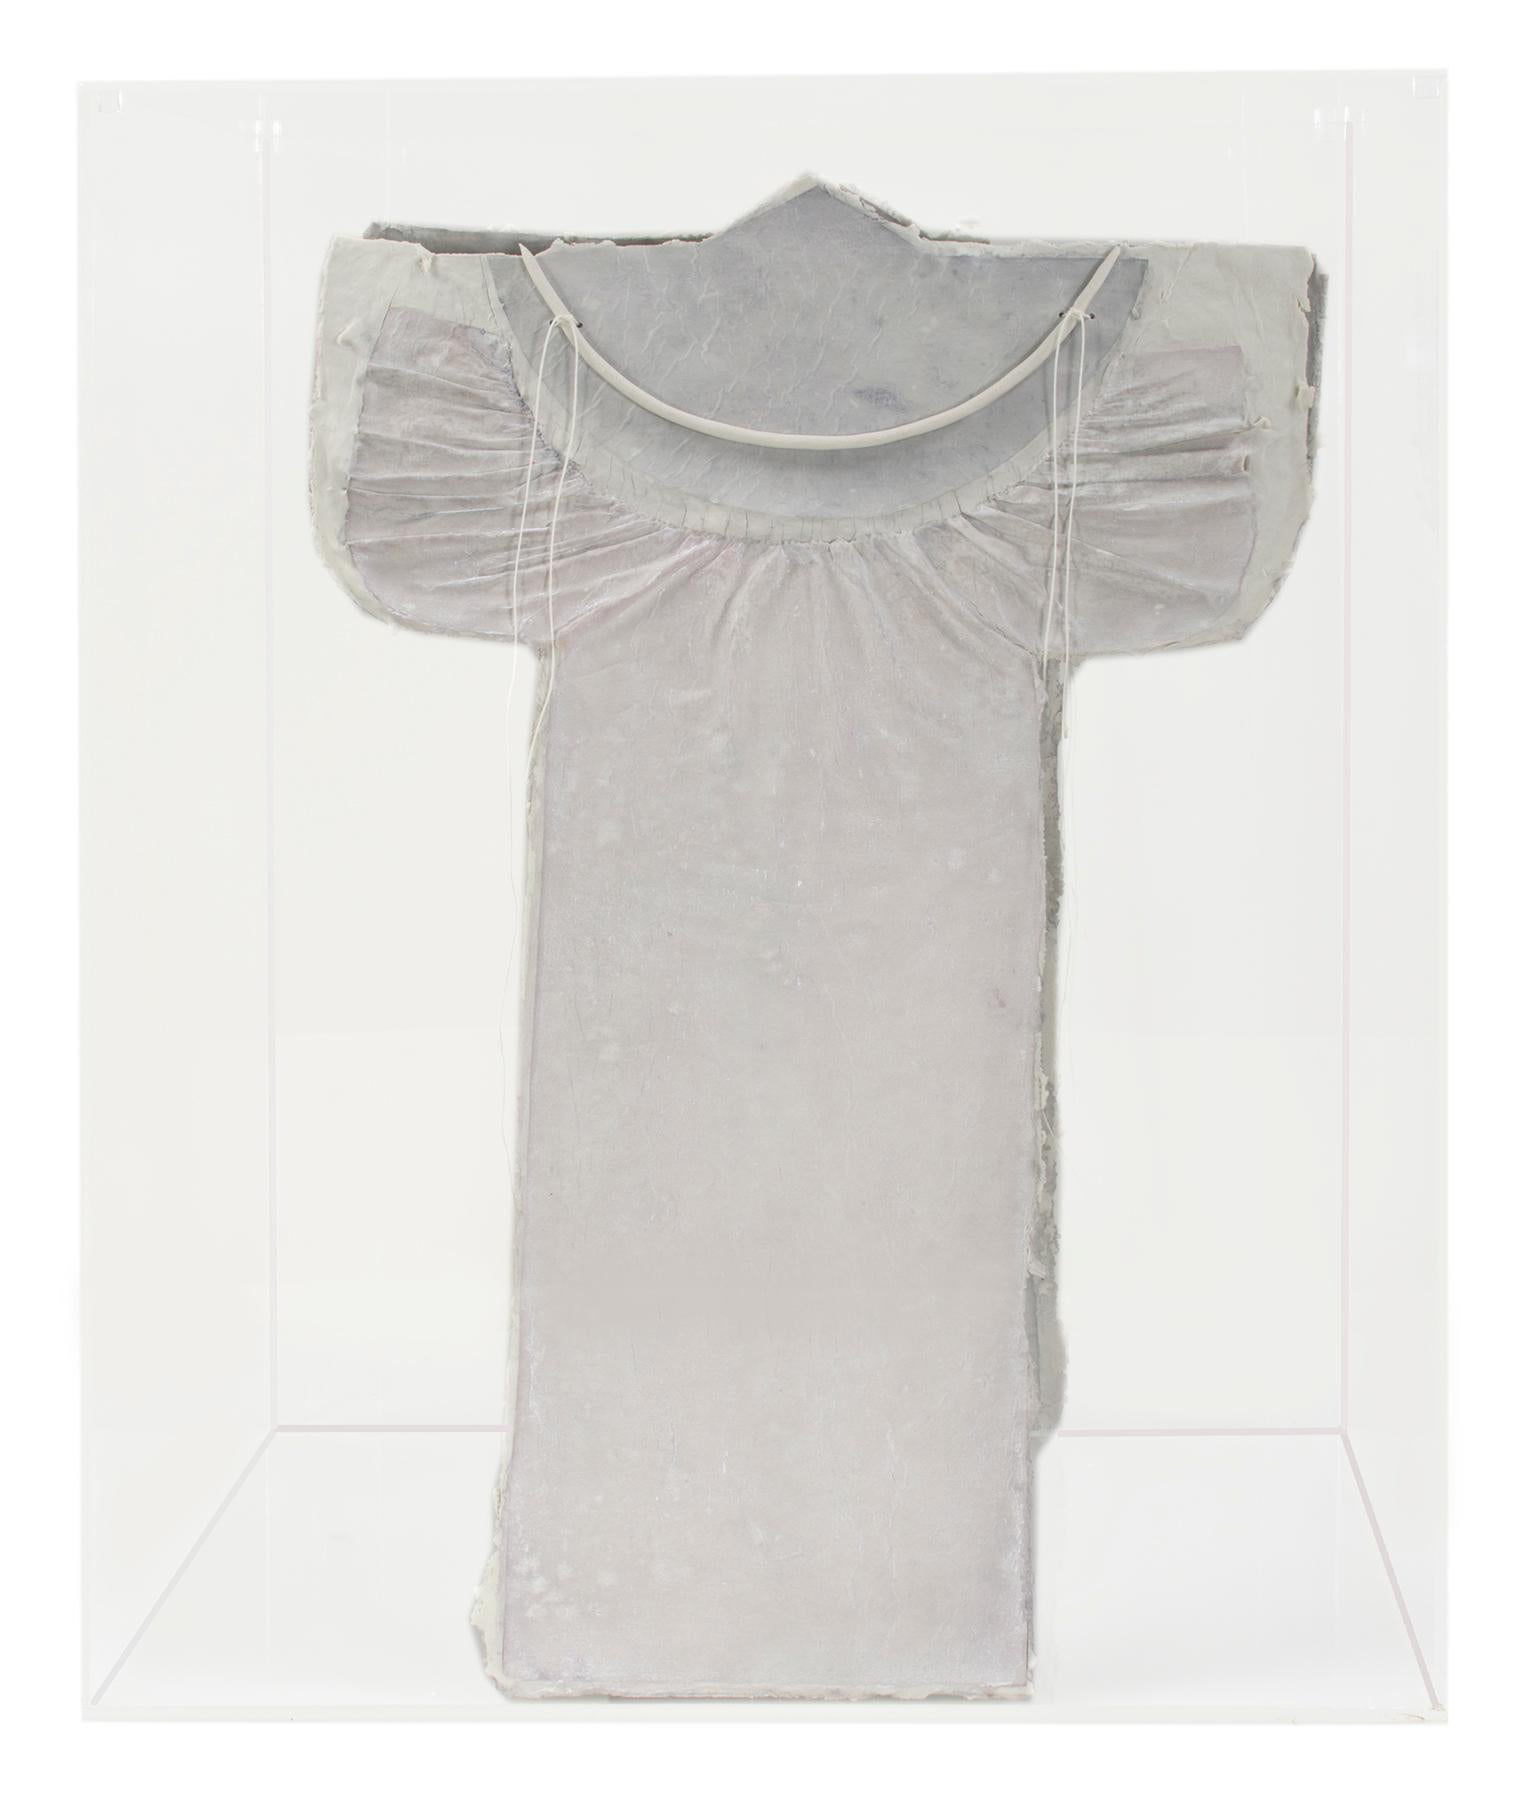 "Kite Series; Guardian III" ist eine Original-Porzellanskulptur von Marjorie Mau. Dieses Stück ähnelt einem weißen Kleid. 

18" x 12" x 12" Kunst

Statement des Künstlers:
"In meinen Arbeiten geht es um den Akt des Malens und Zeichnens, darum, wie